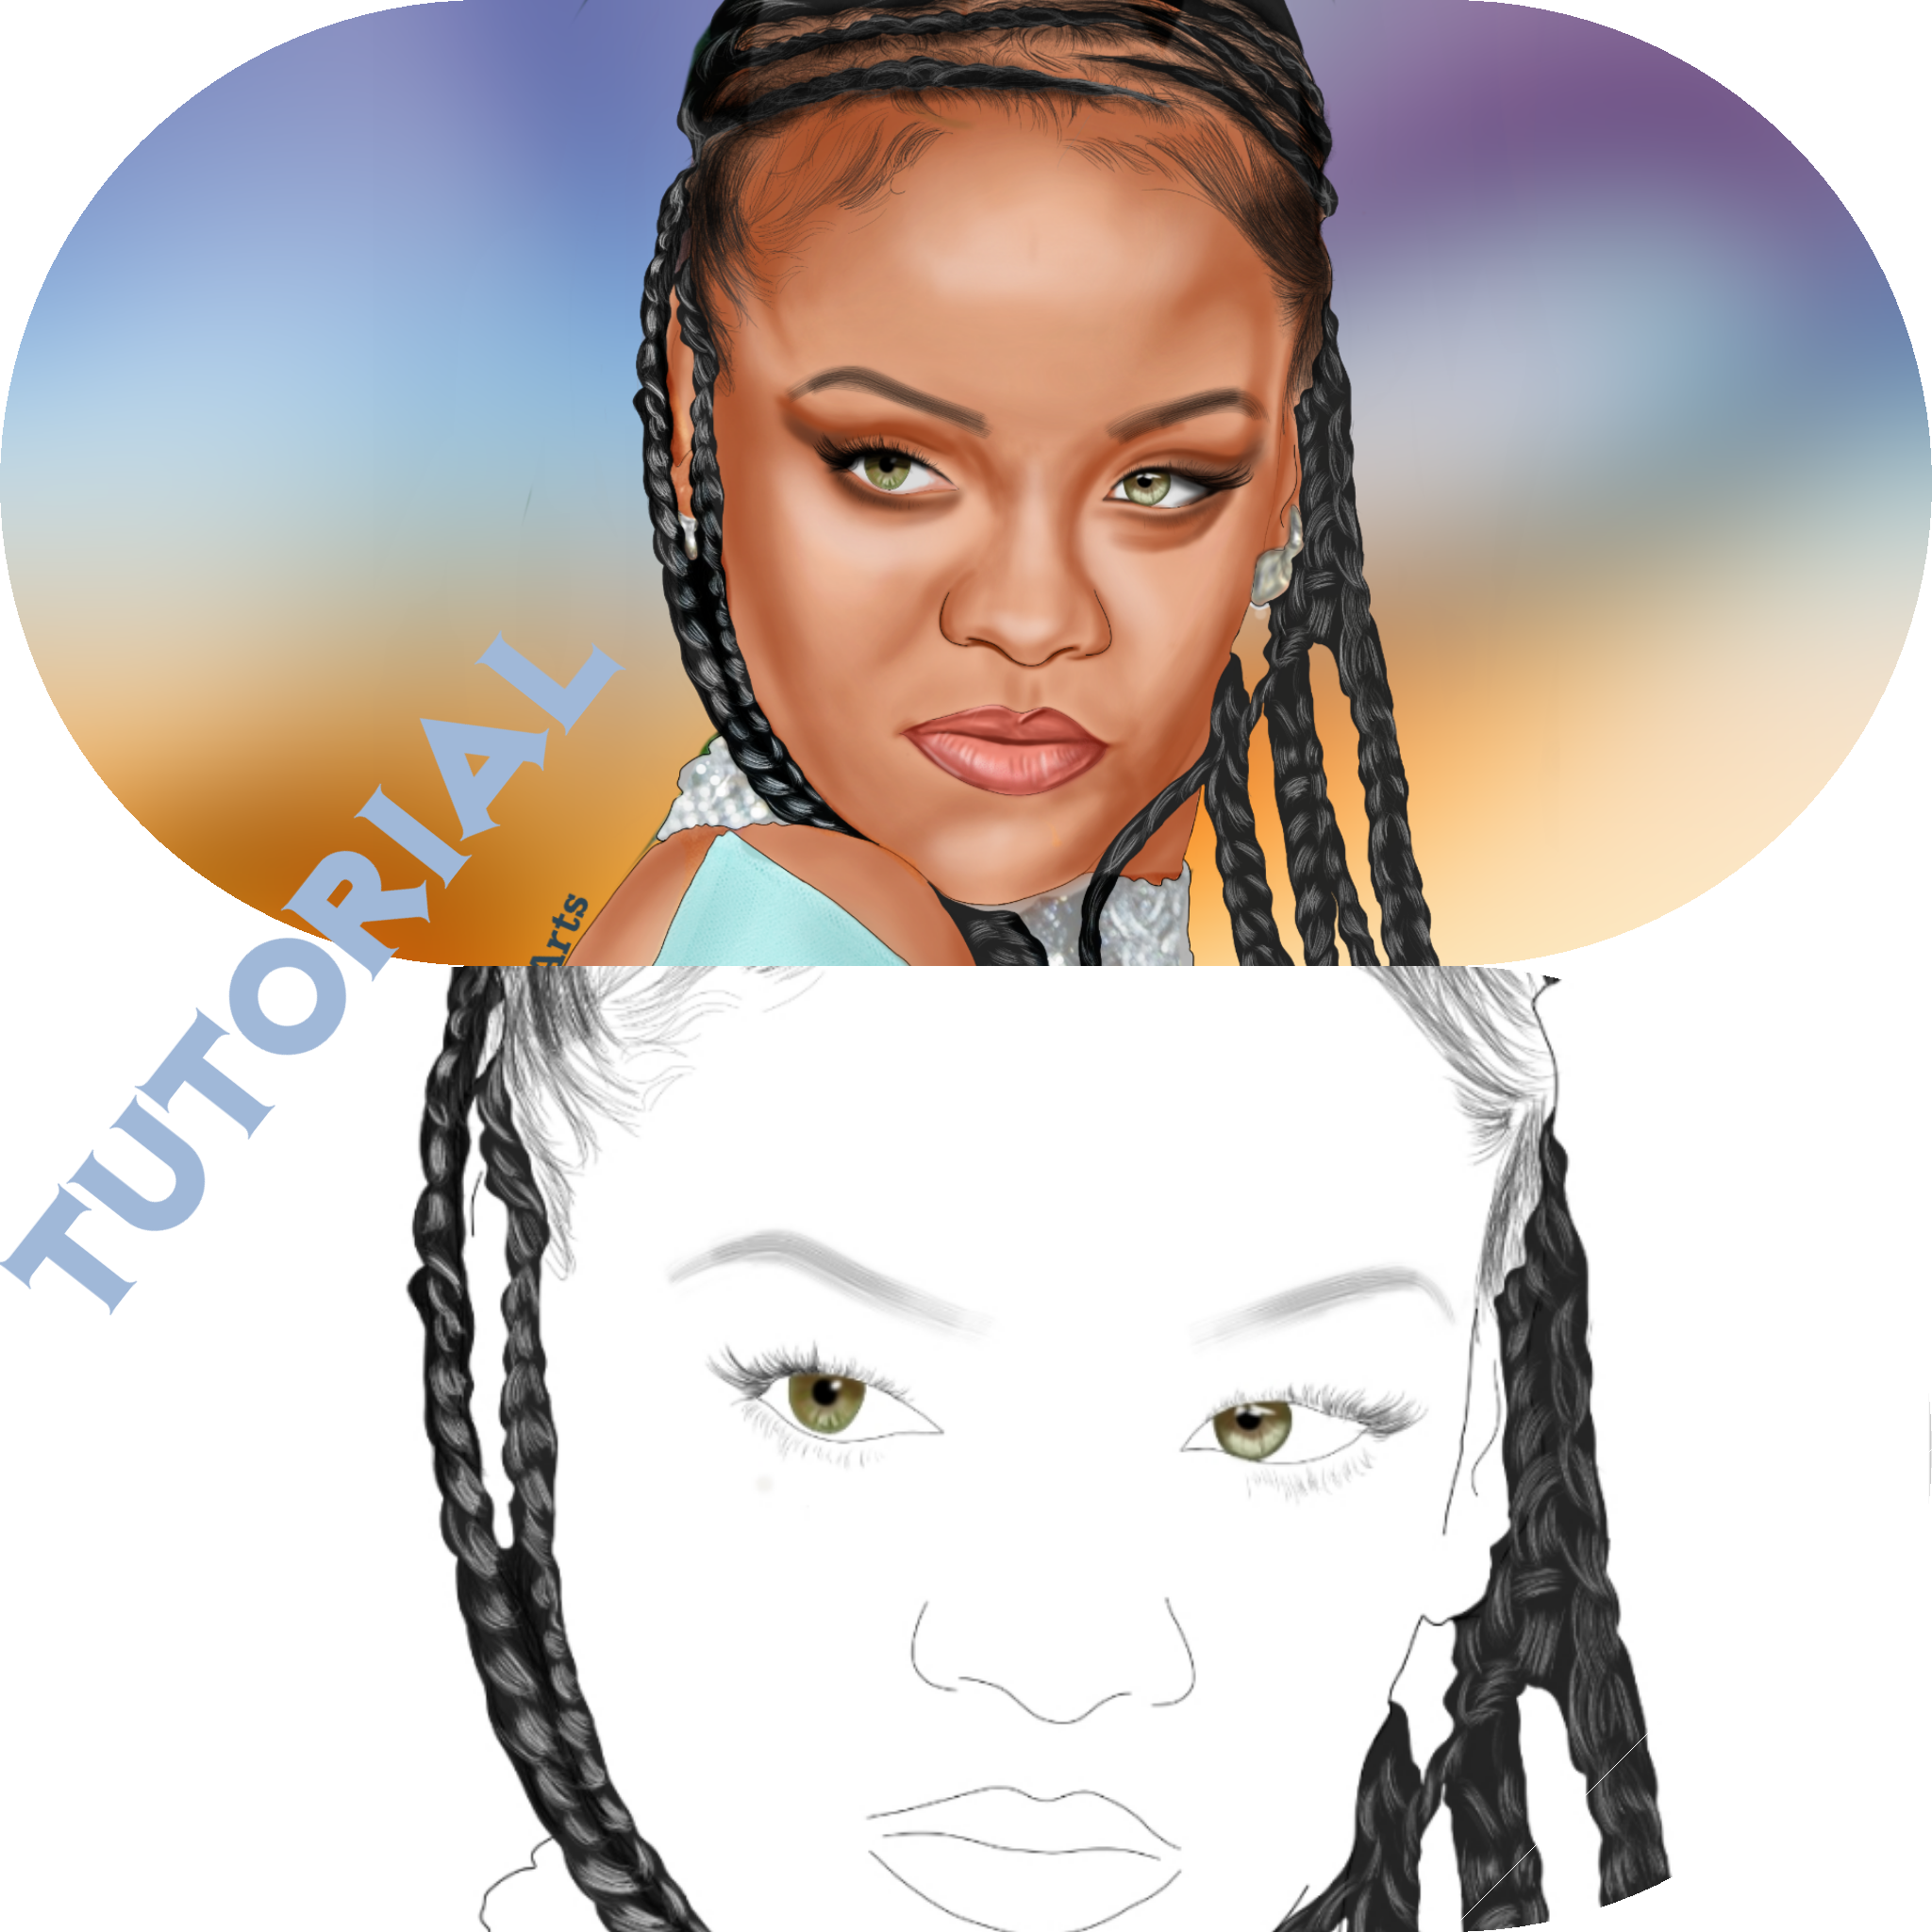 Autodesk Sketchbook: Drawing Rihanna (Full sketch tutorial) — Steemit